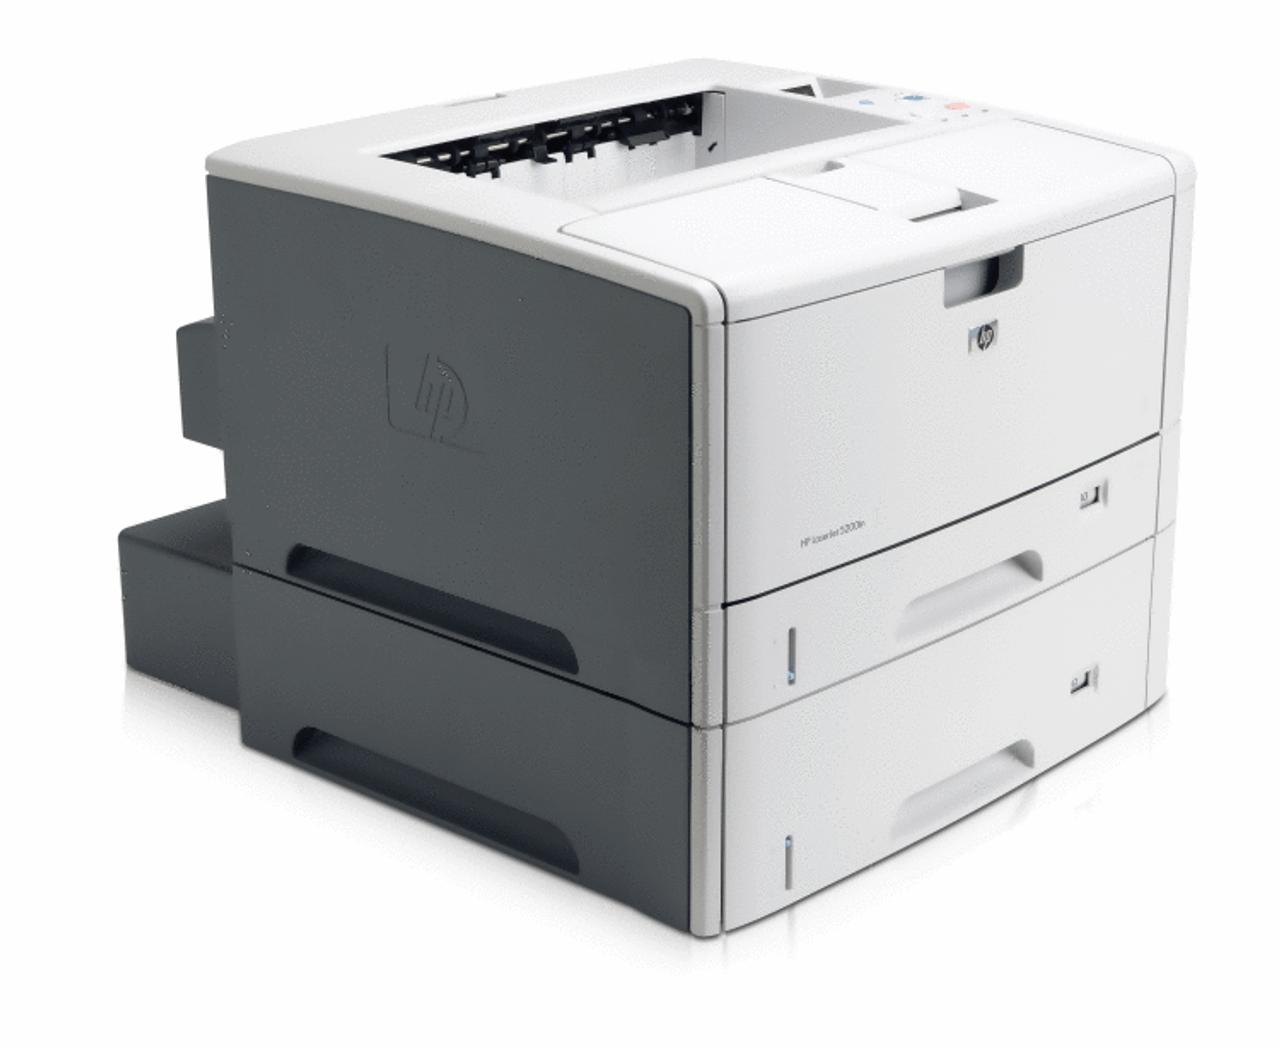 hewlett packard 11x17 laser printer - What printer option is 11x17